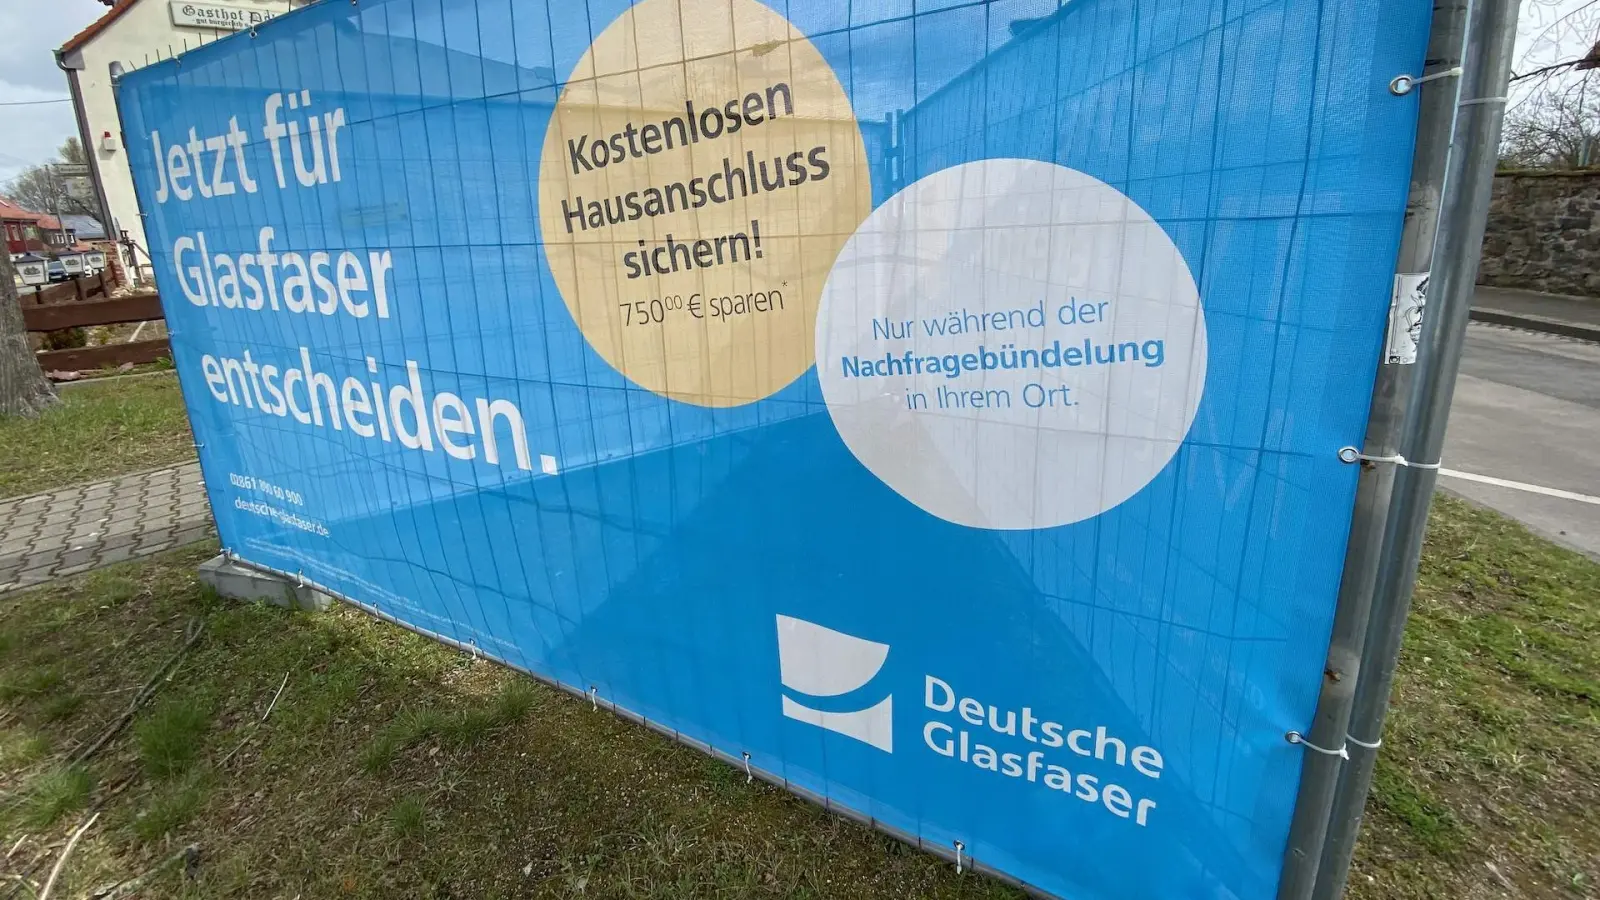 80 Verträge fehlen - Deutsche Glasfaser geht in die Verlängerung (Foto: taucha-kompakt.de)